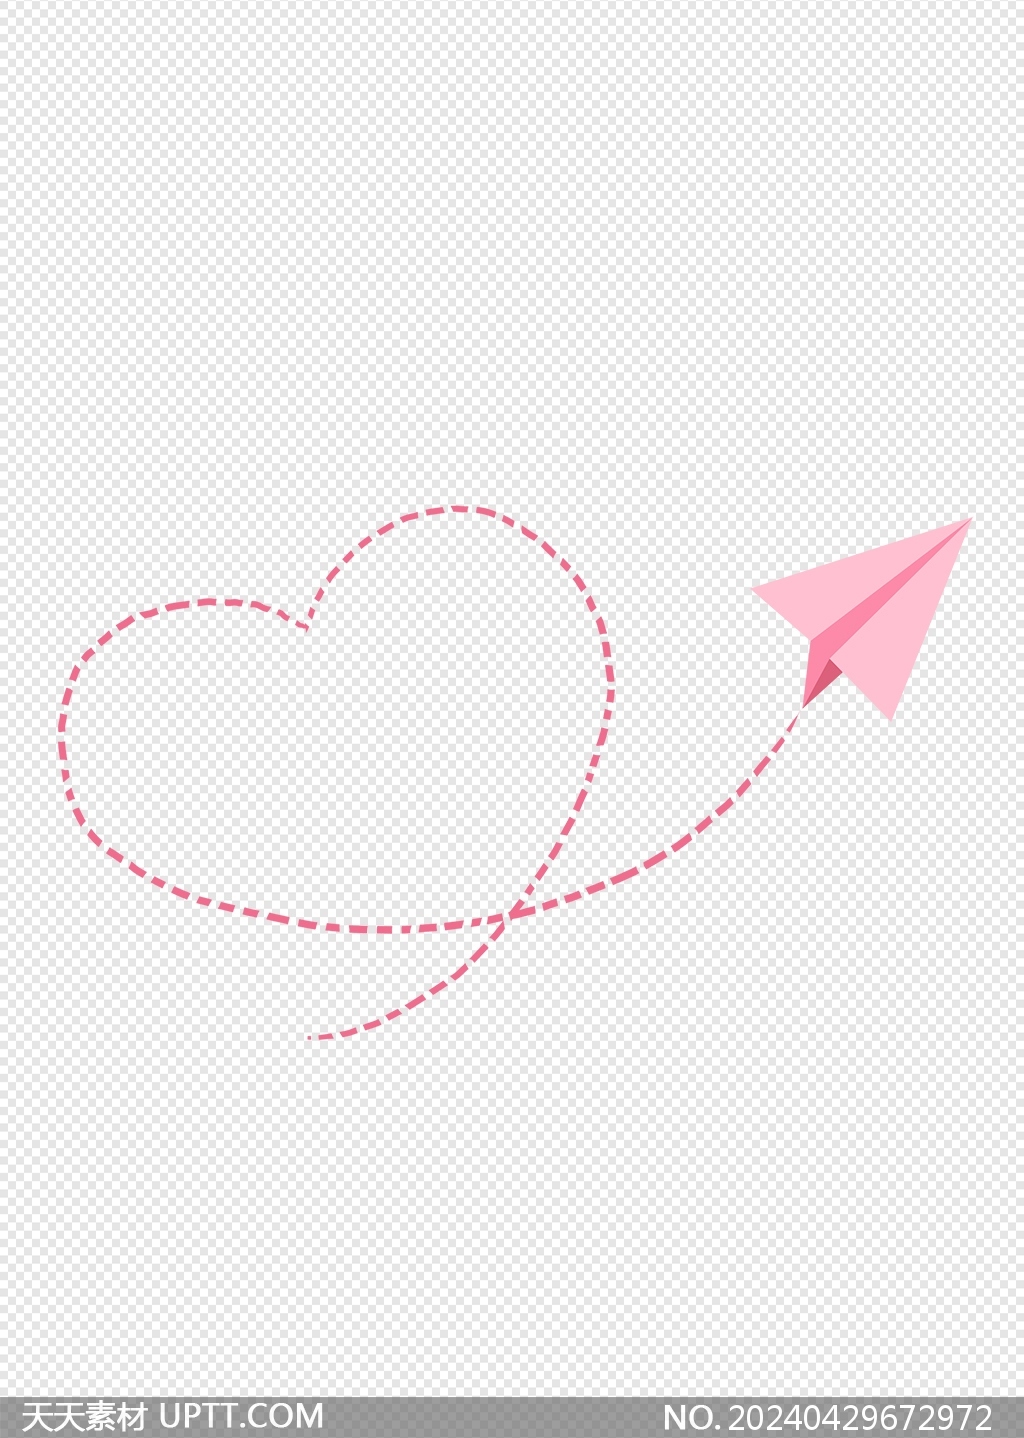 粉色浪漫纸飞机心形轨迹情人节元素素材